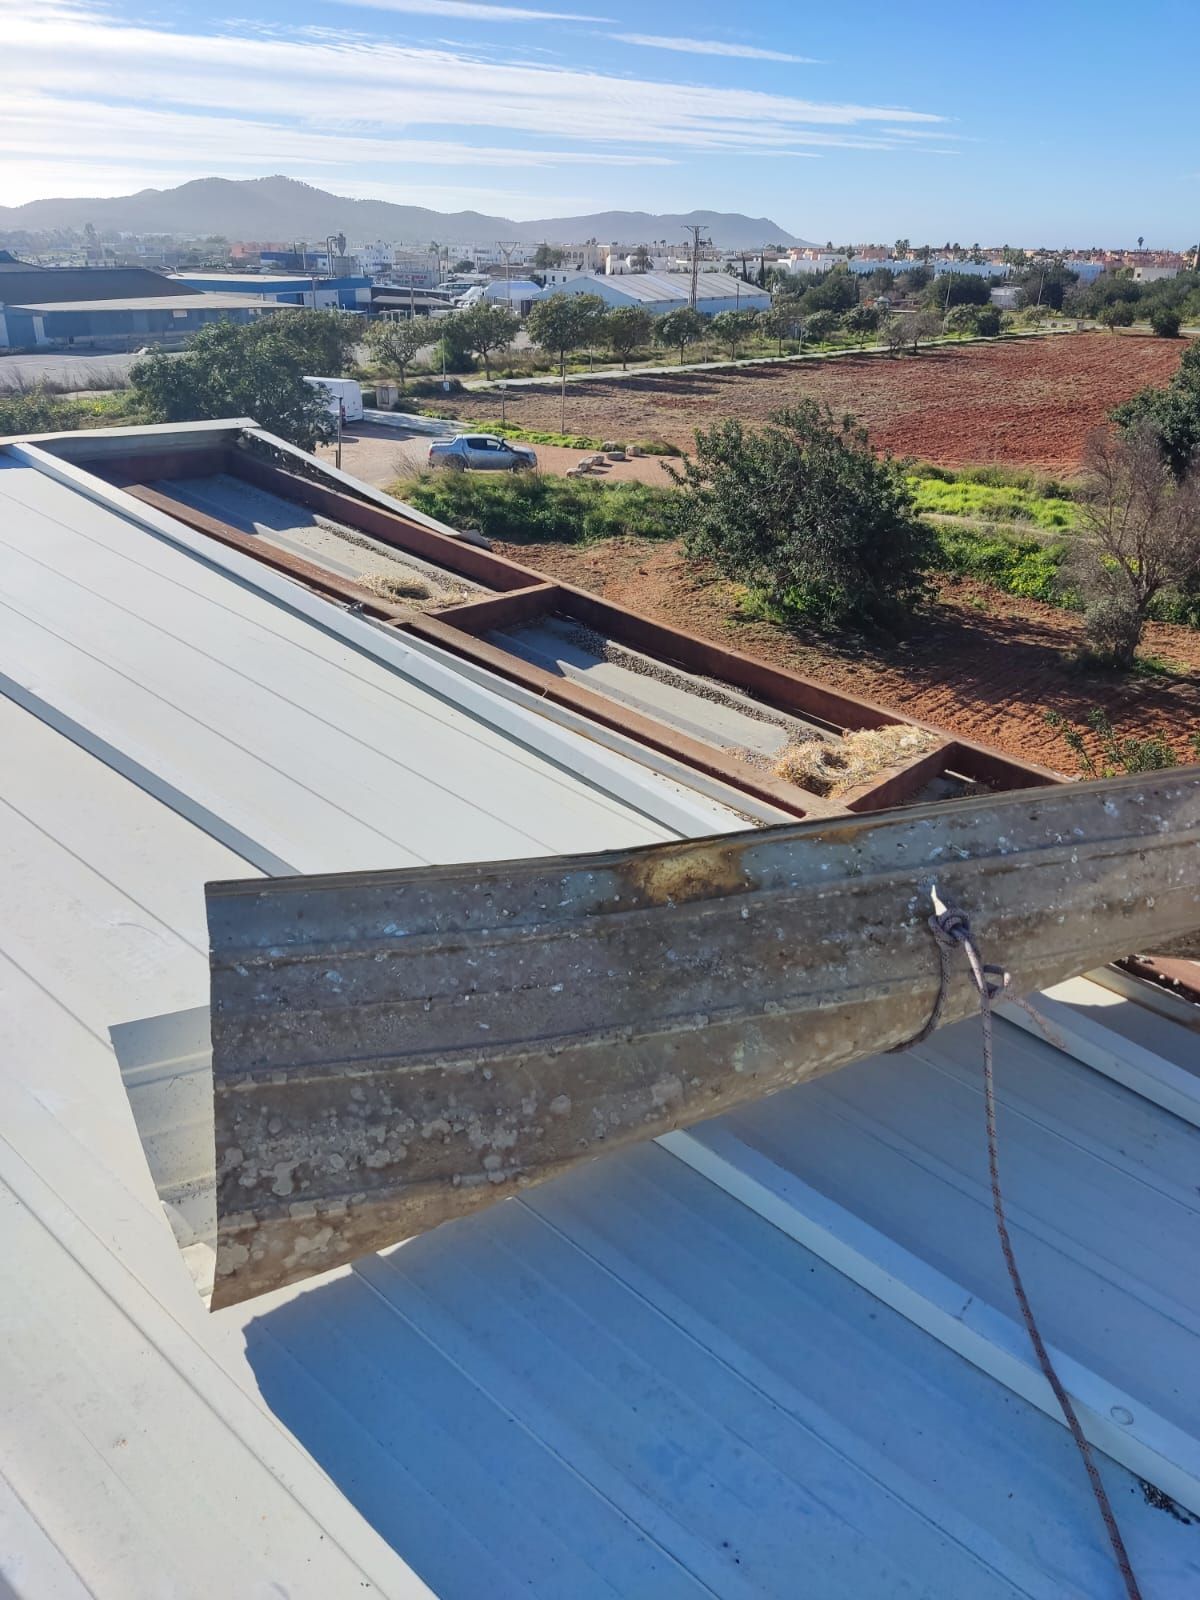 El viento arranca parte del tejado del instituto Algarb en Ibiza